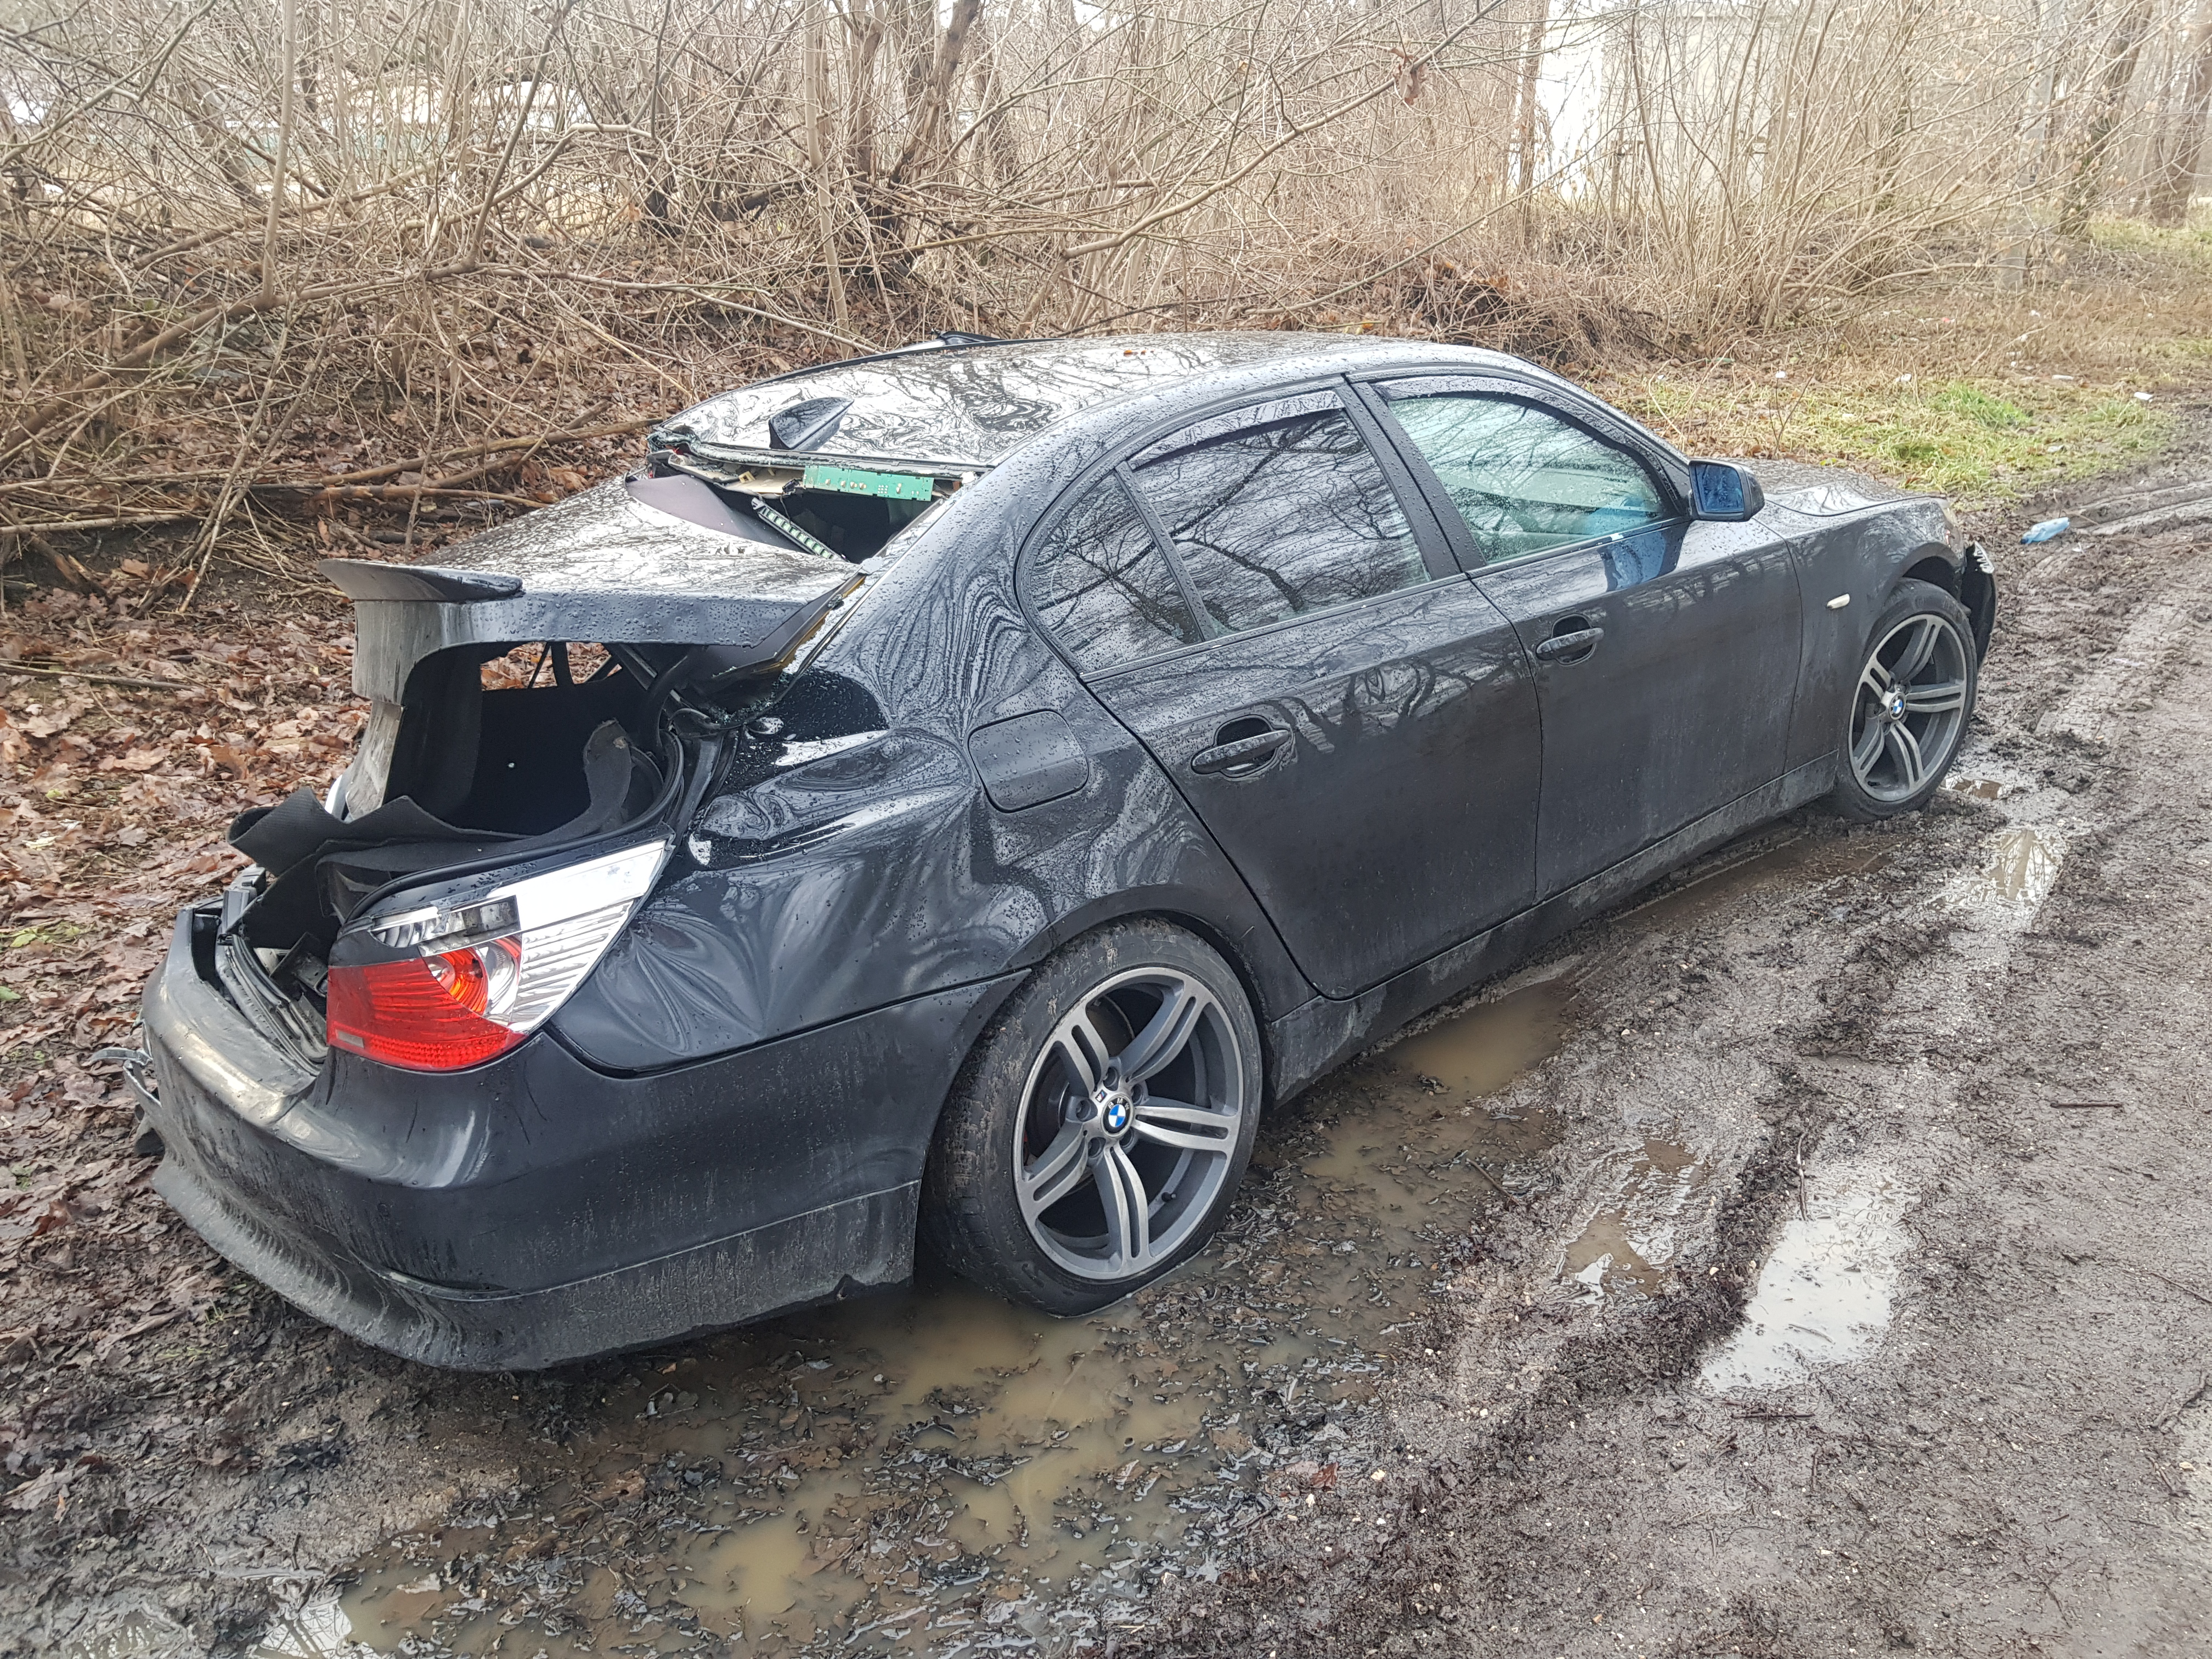 Rozbite w wypadku BMW wywieziono do lasu. Wcześniej zerwane zostały tablice rejestracyjne (zdjęcia)